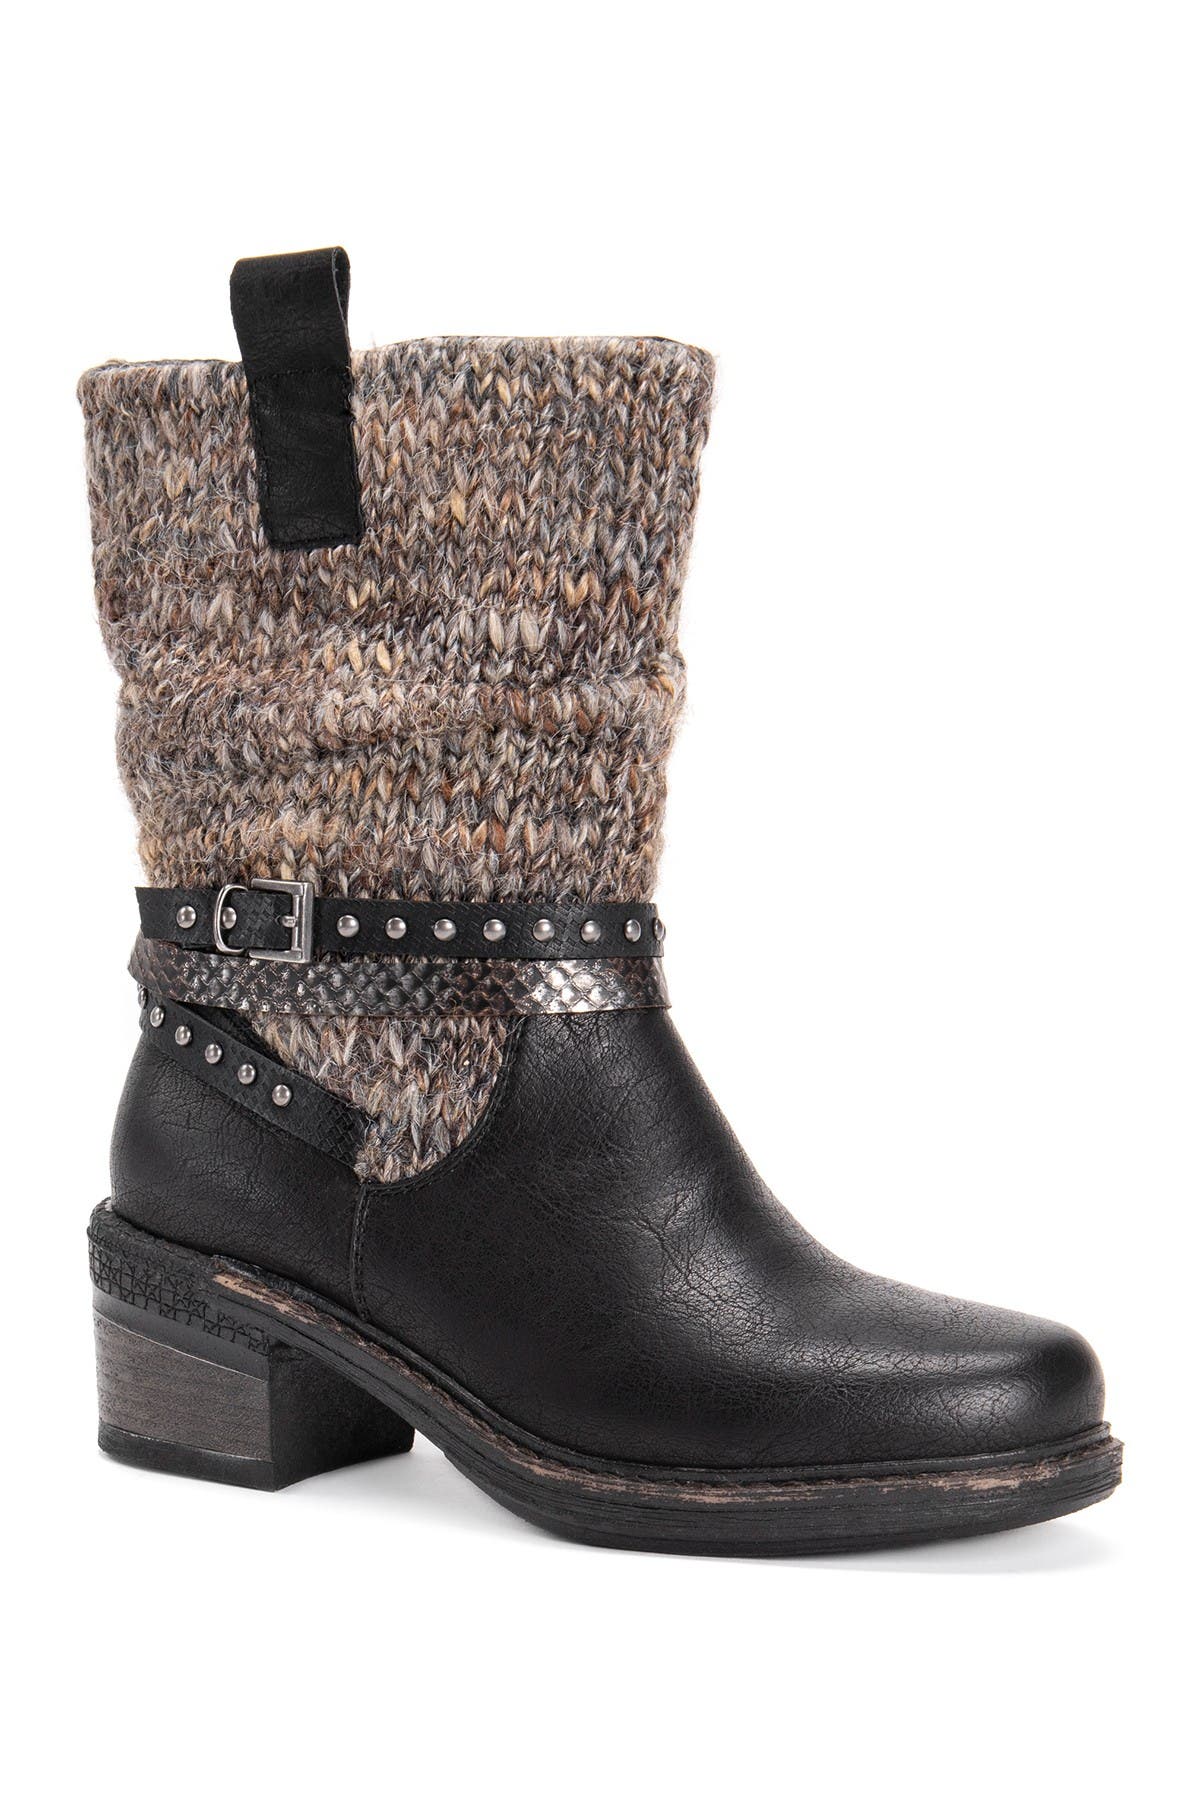 muk luks cass women's winter boots